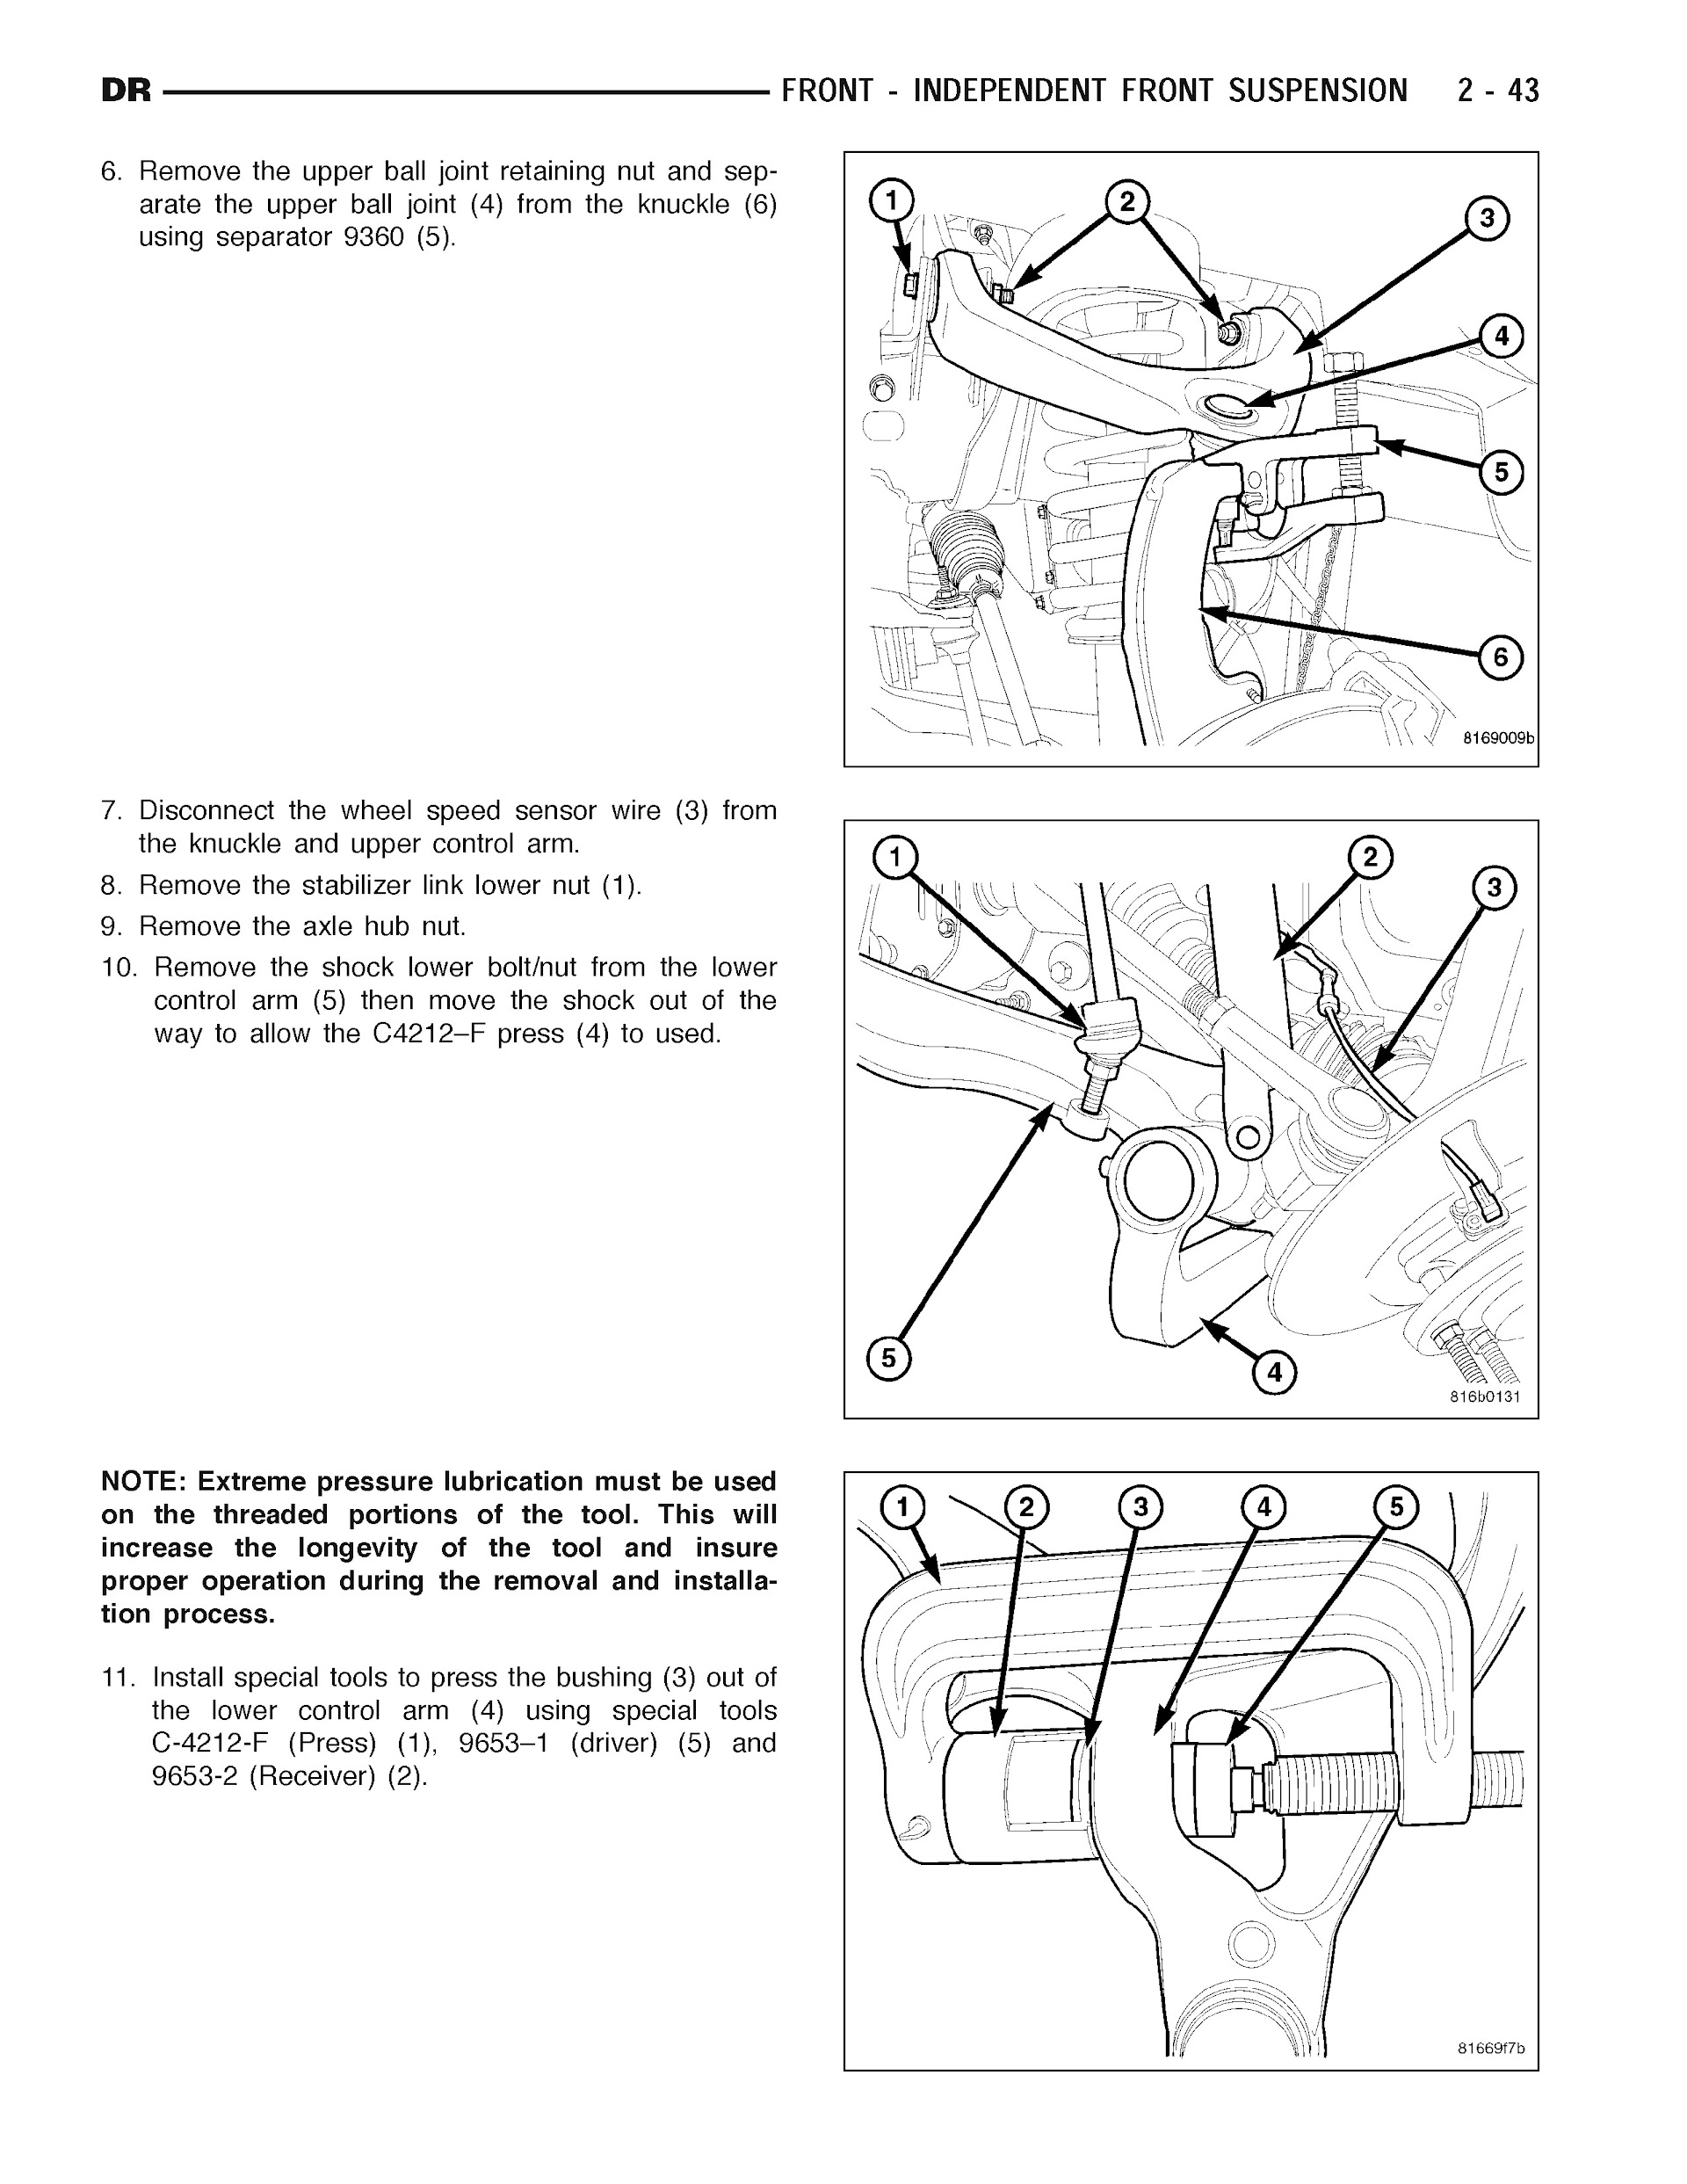 2007 Dodge RAM Repair Manual, Front Suspension